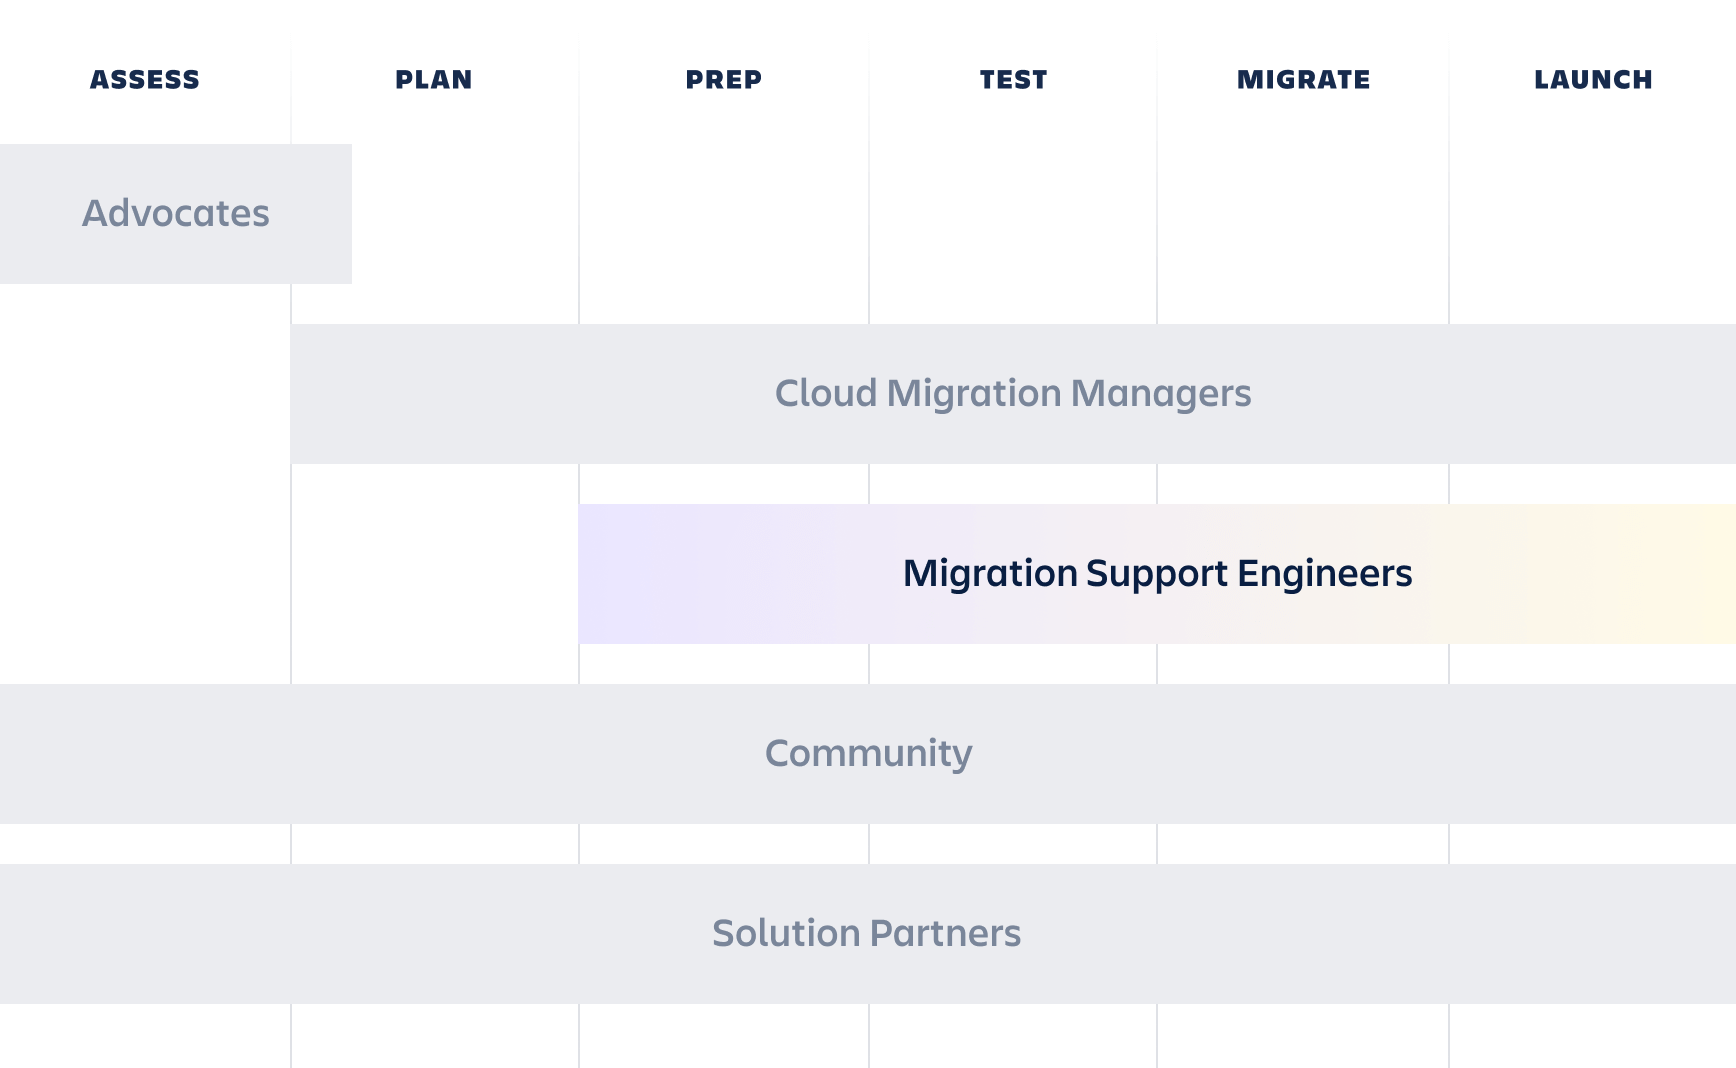 Harmonogram dotyczący inżynierów wsparcia migracji